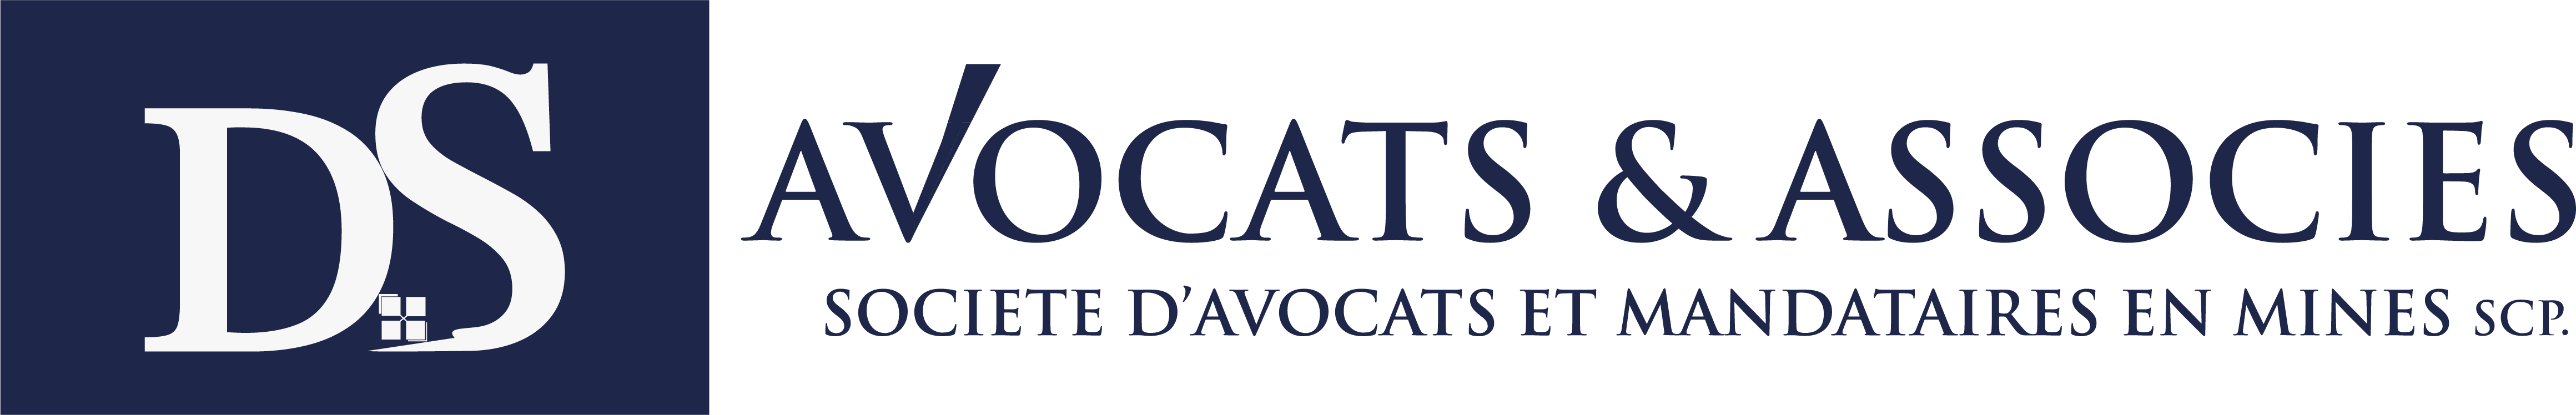 Logo DS AVOCATS ET ASSOCIES